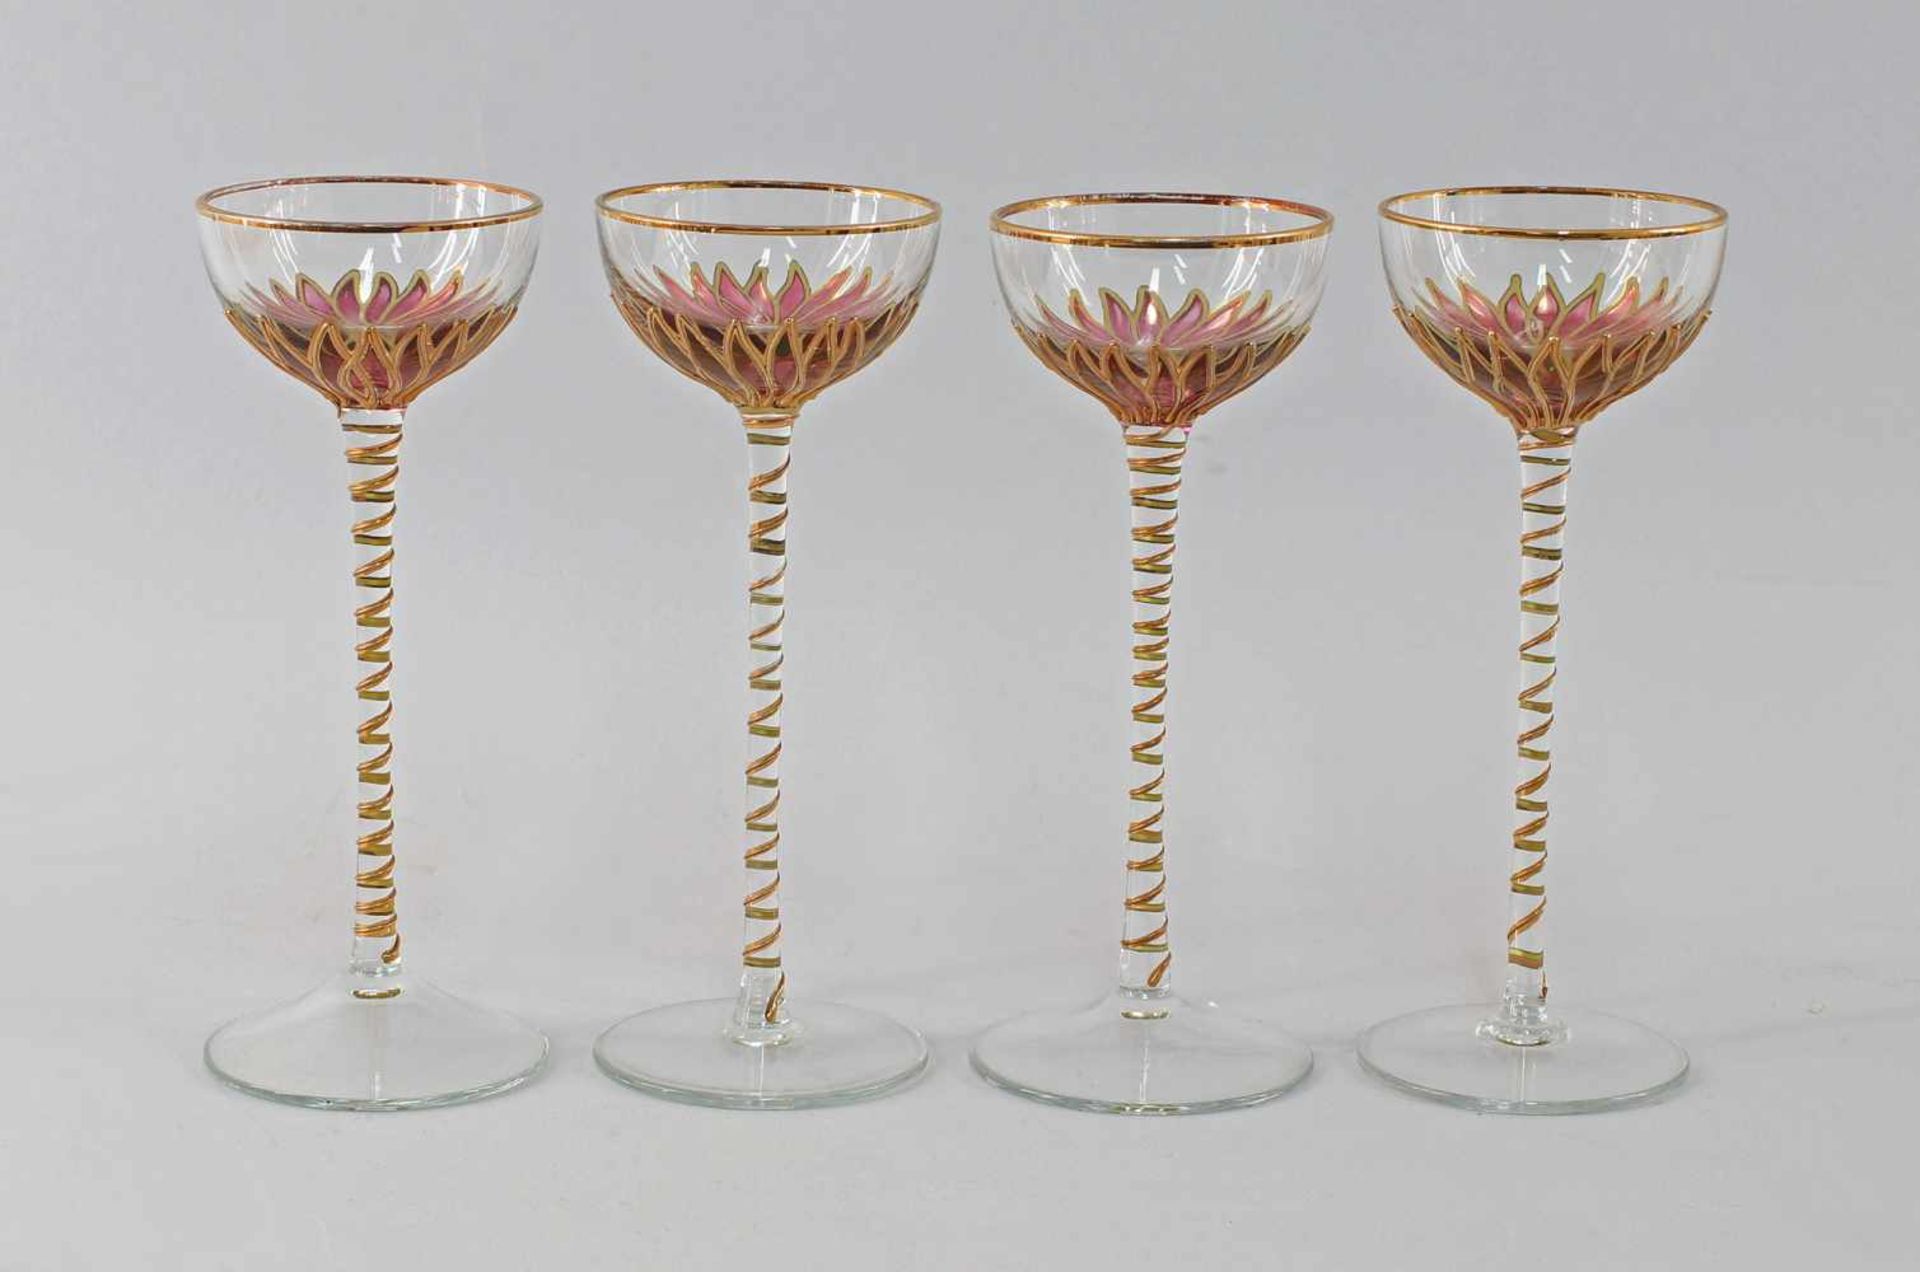 4 Likörglaser Jugendstilfarbloses Glas, Bemalung der Kuppa in Blütenform, Transparent- und